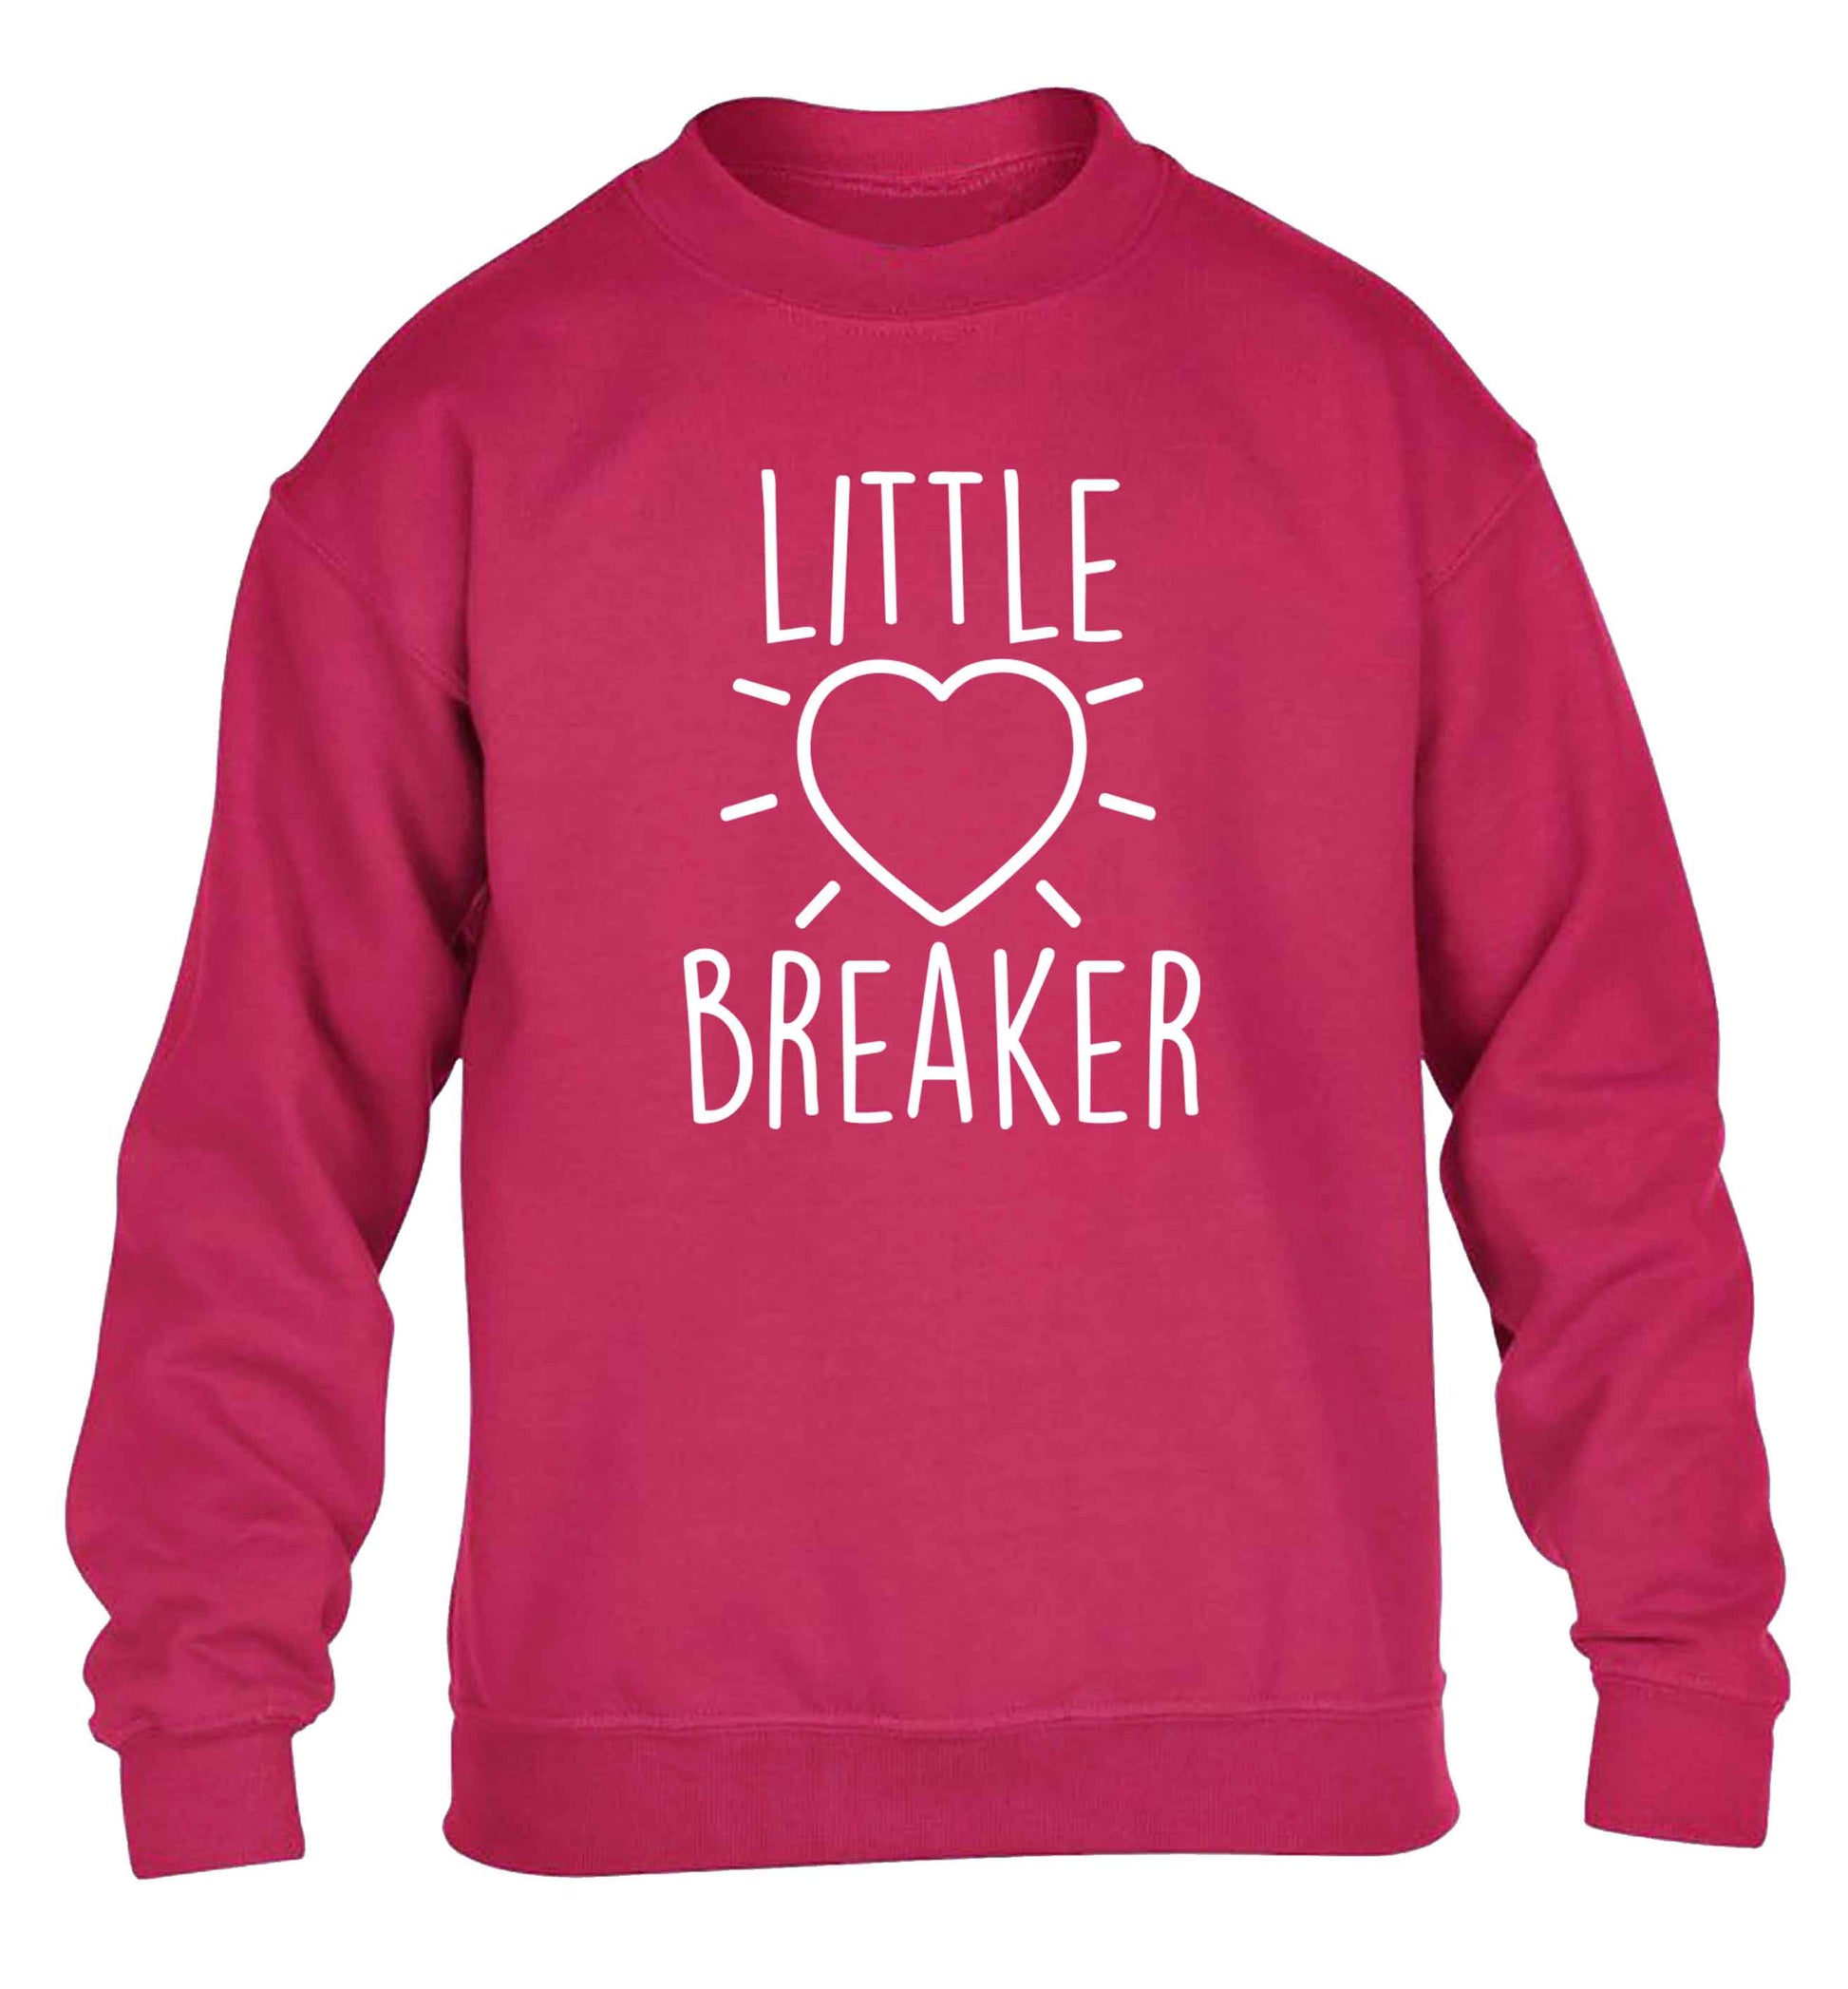 Little heartbreaker children's pink sweater 12-13 Years